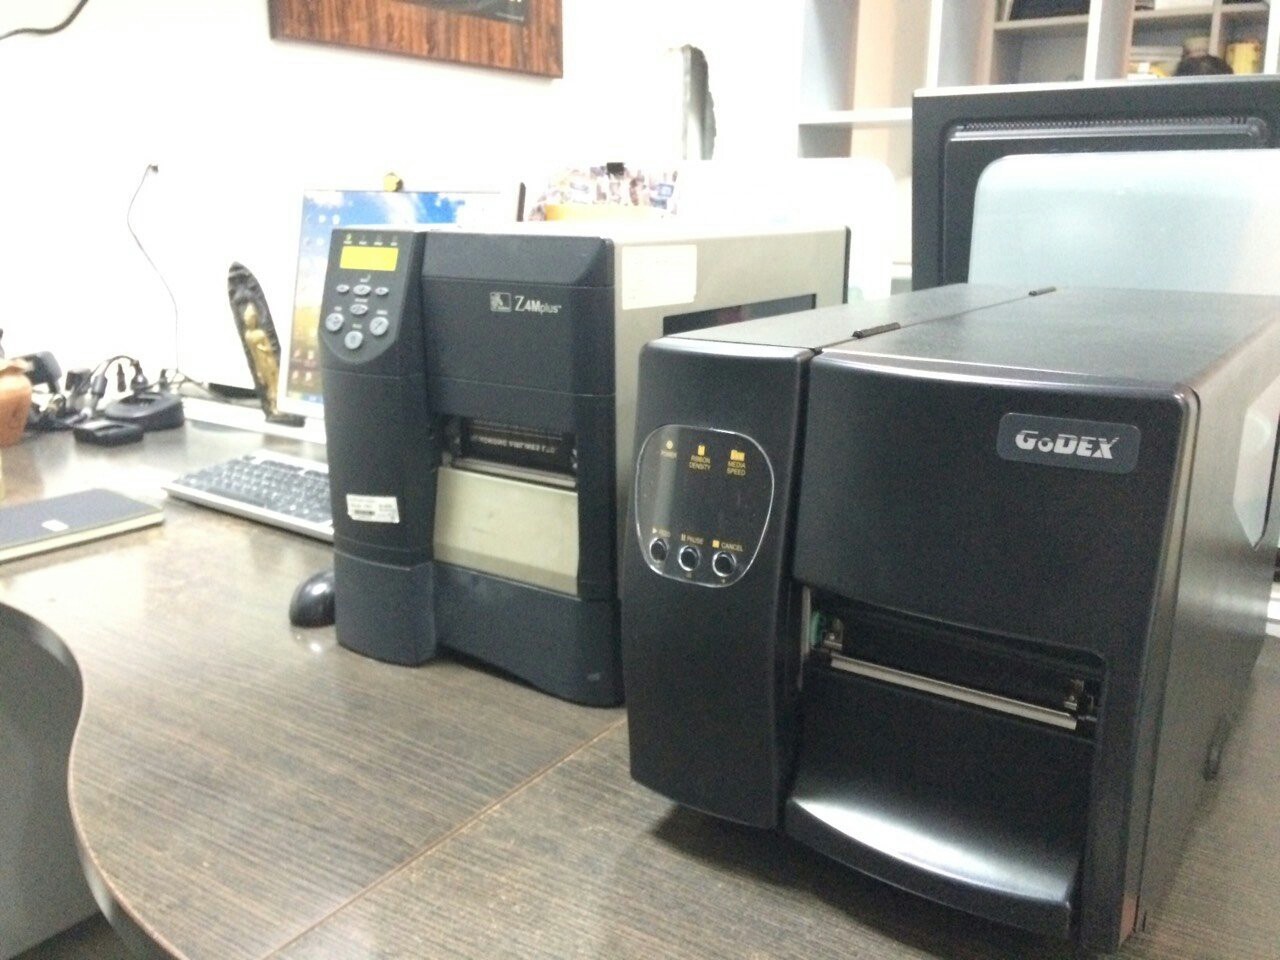 เครื่องพิมพ์บาร์โค้ด Godex รุ่น EZ2050